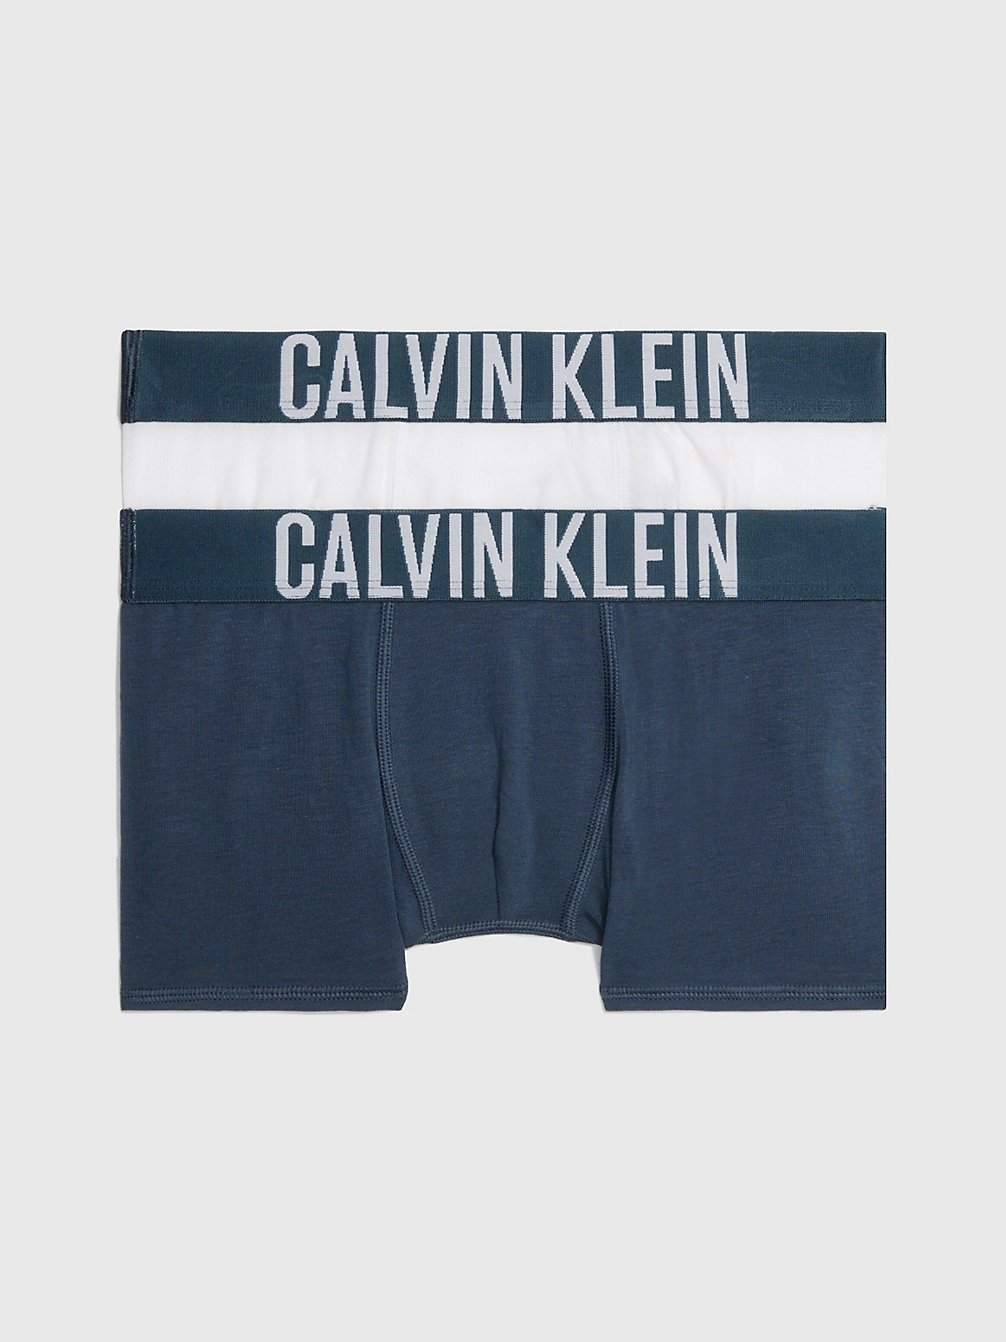 BLUENOMAD/PVHWHITE 2 Pack Boys Trunks - Intense Power undefined boys Calvin Klein